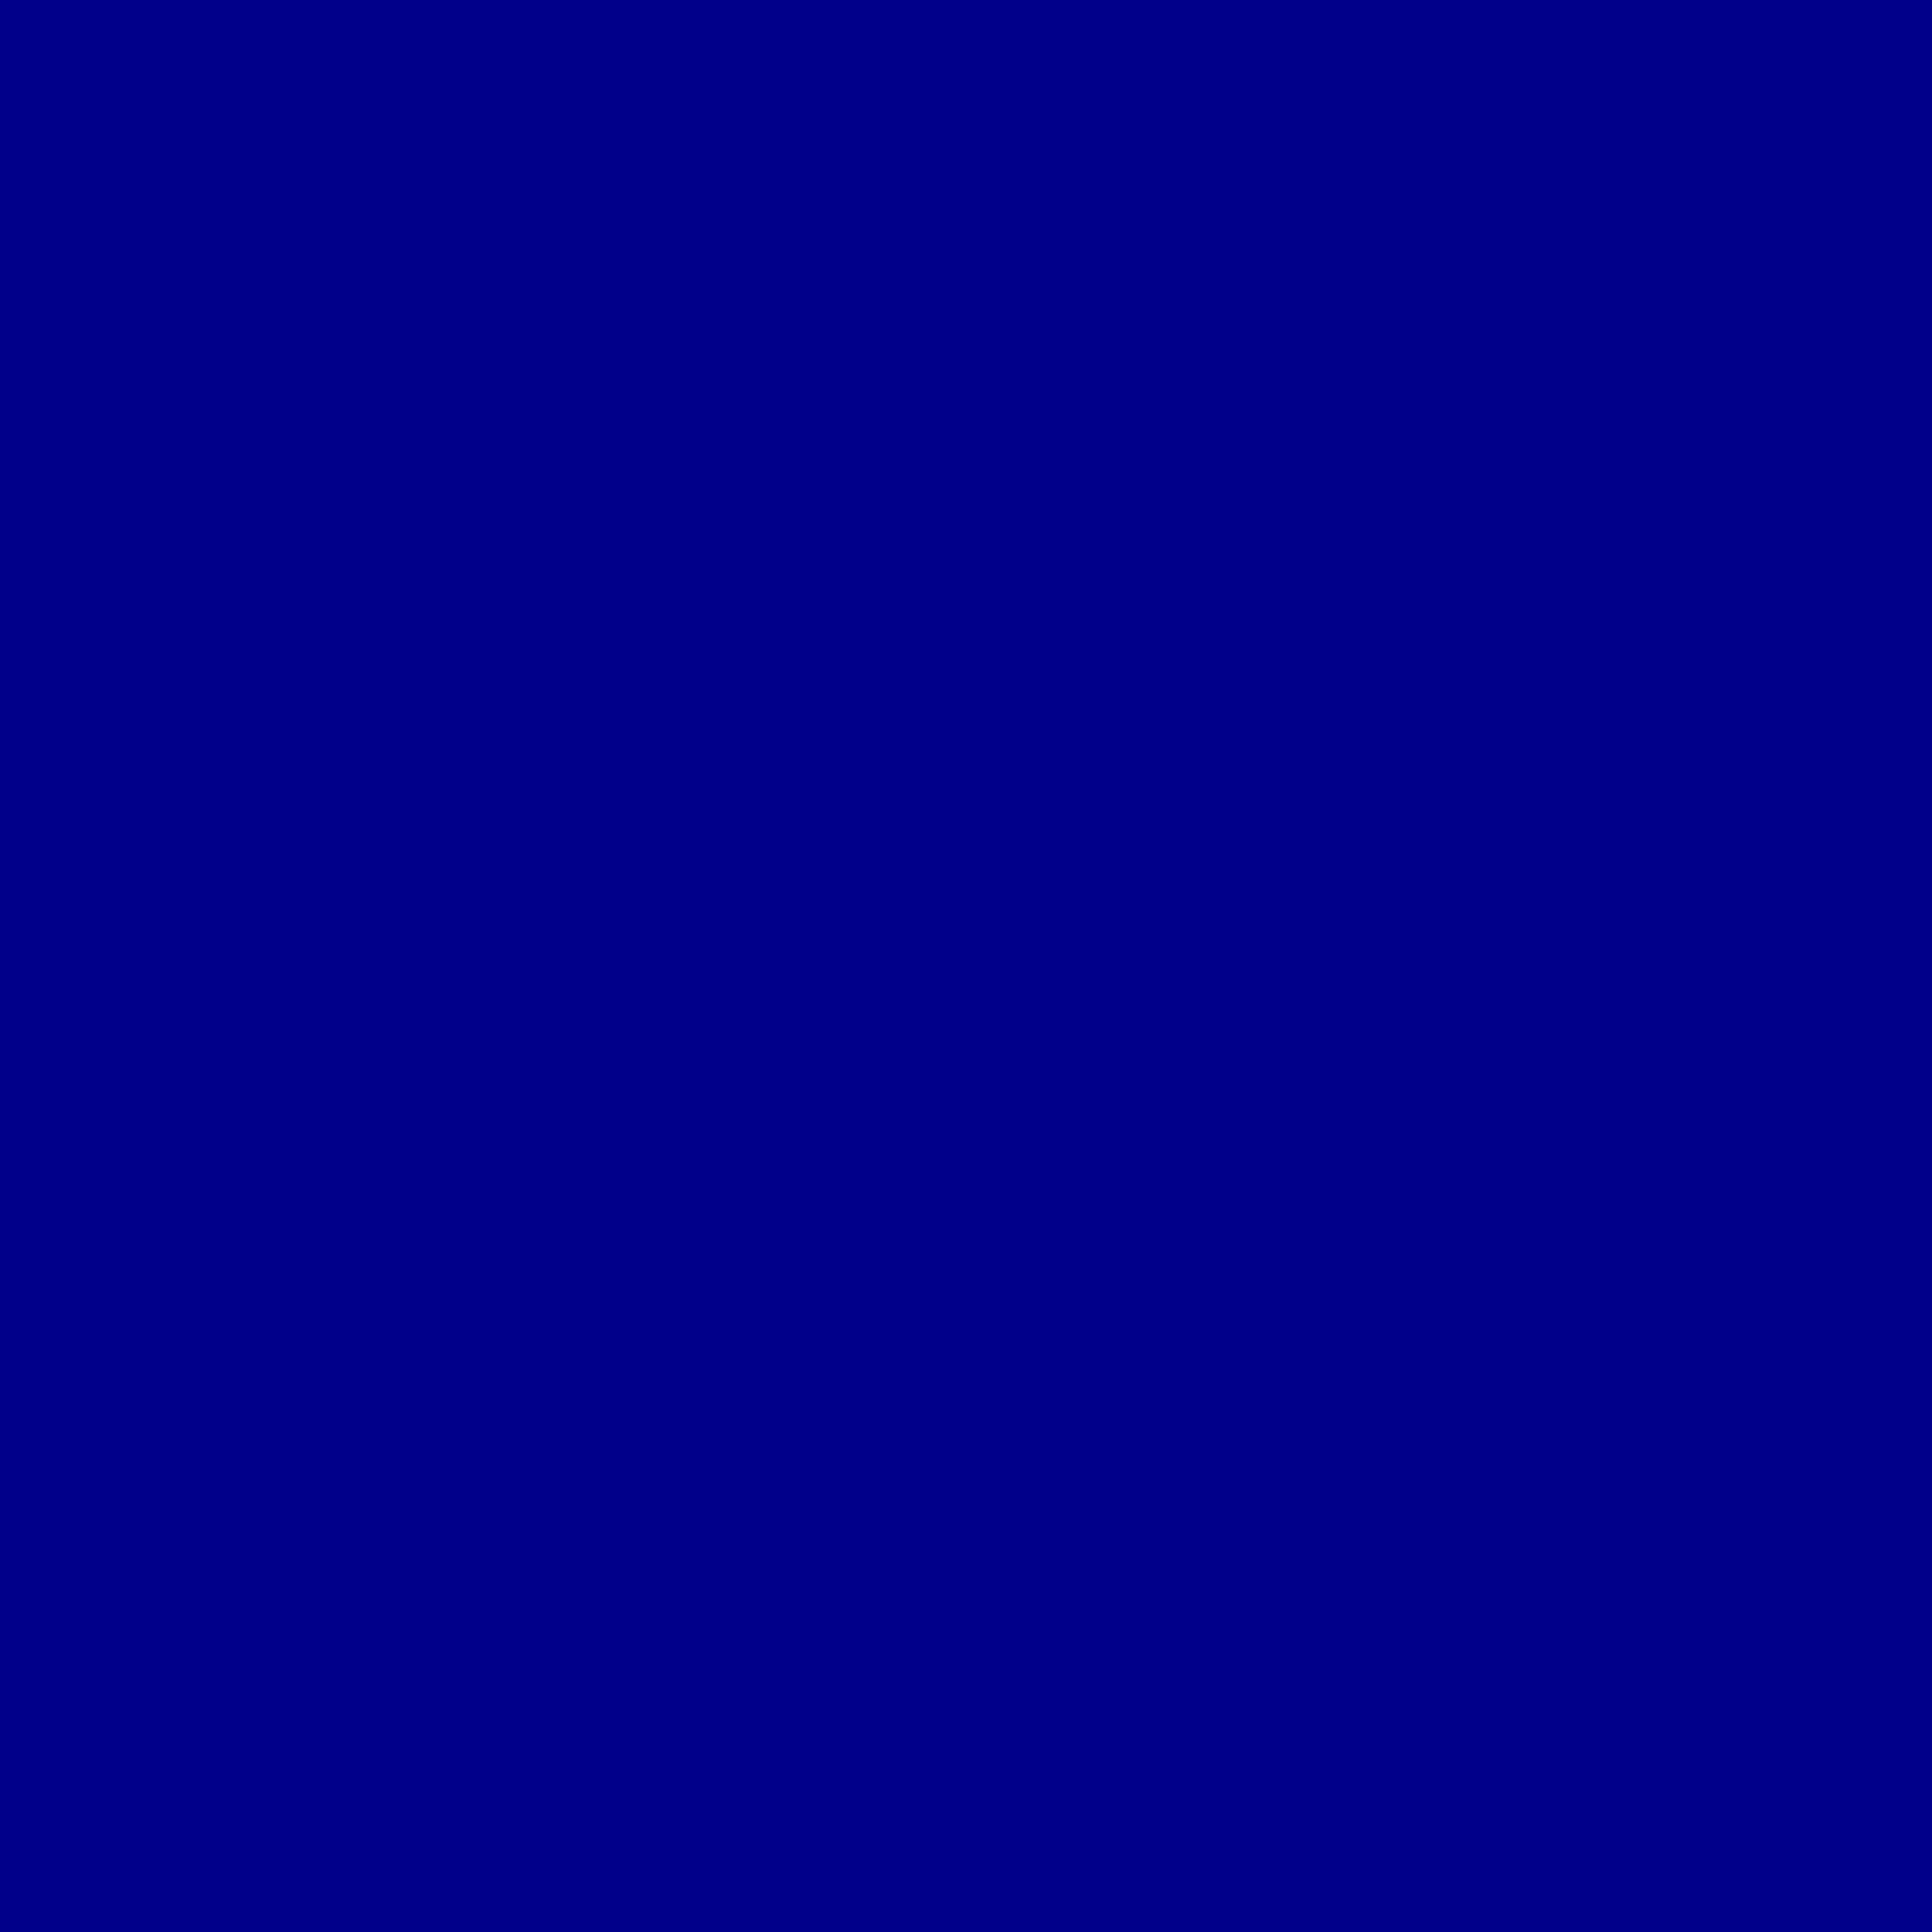 Background Solid Blue Color Web App Plain Car Pictures